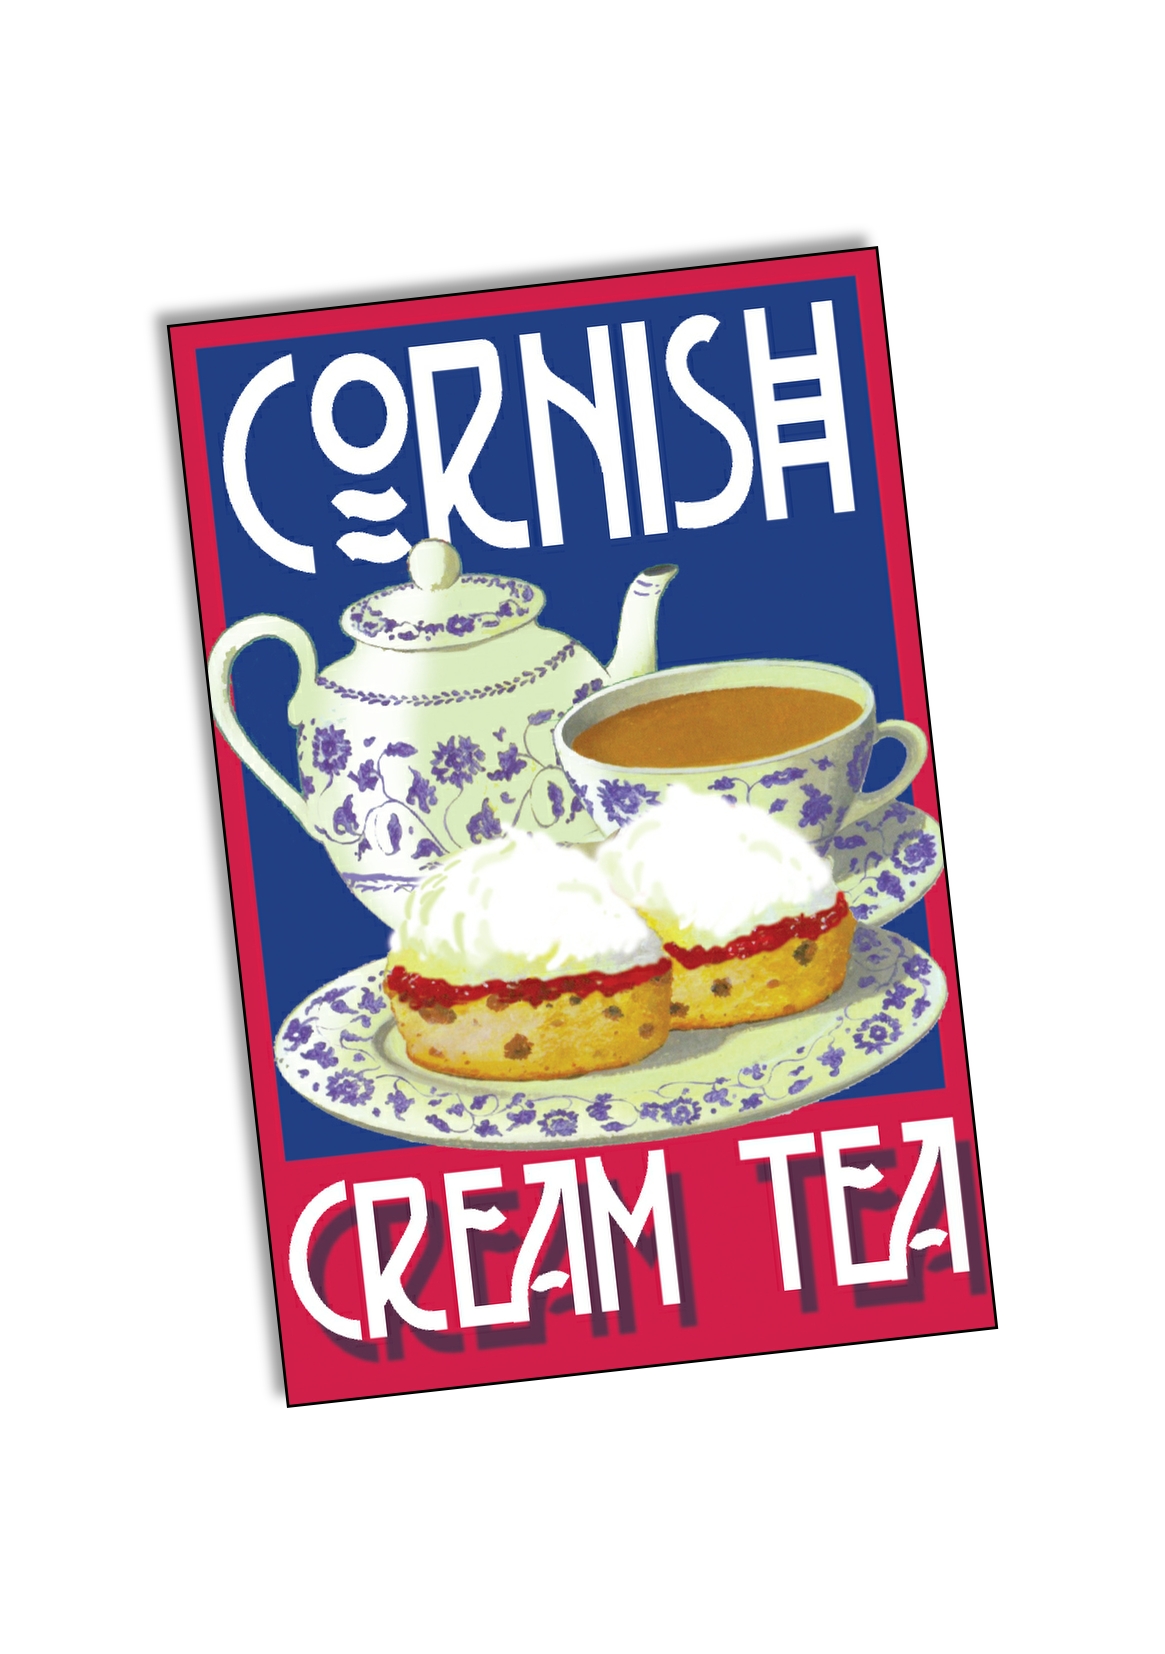 Tin Plate Magnet Retro Cornish Cream Tea